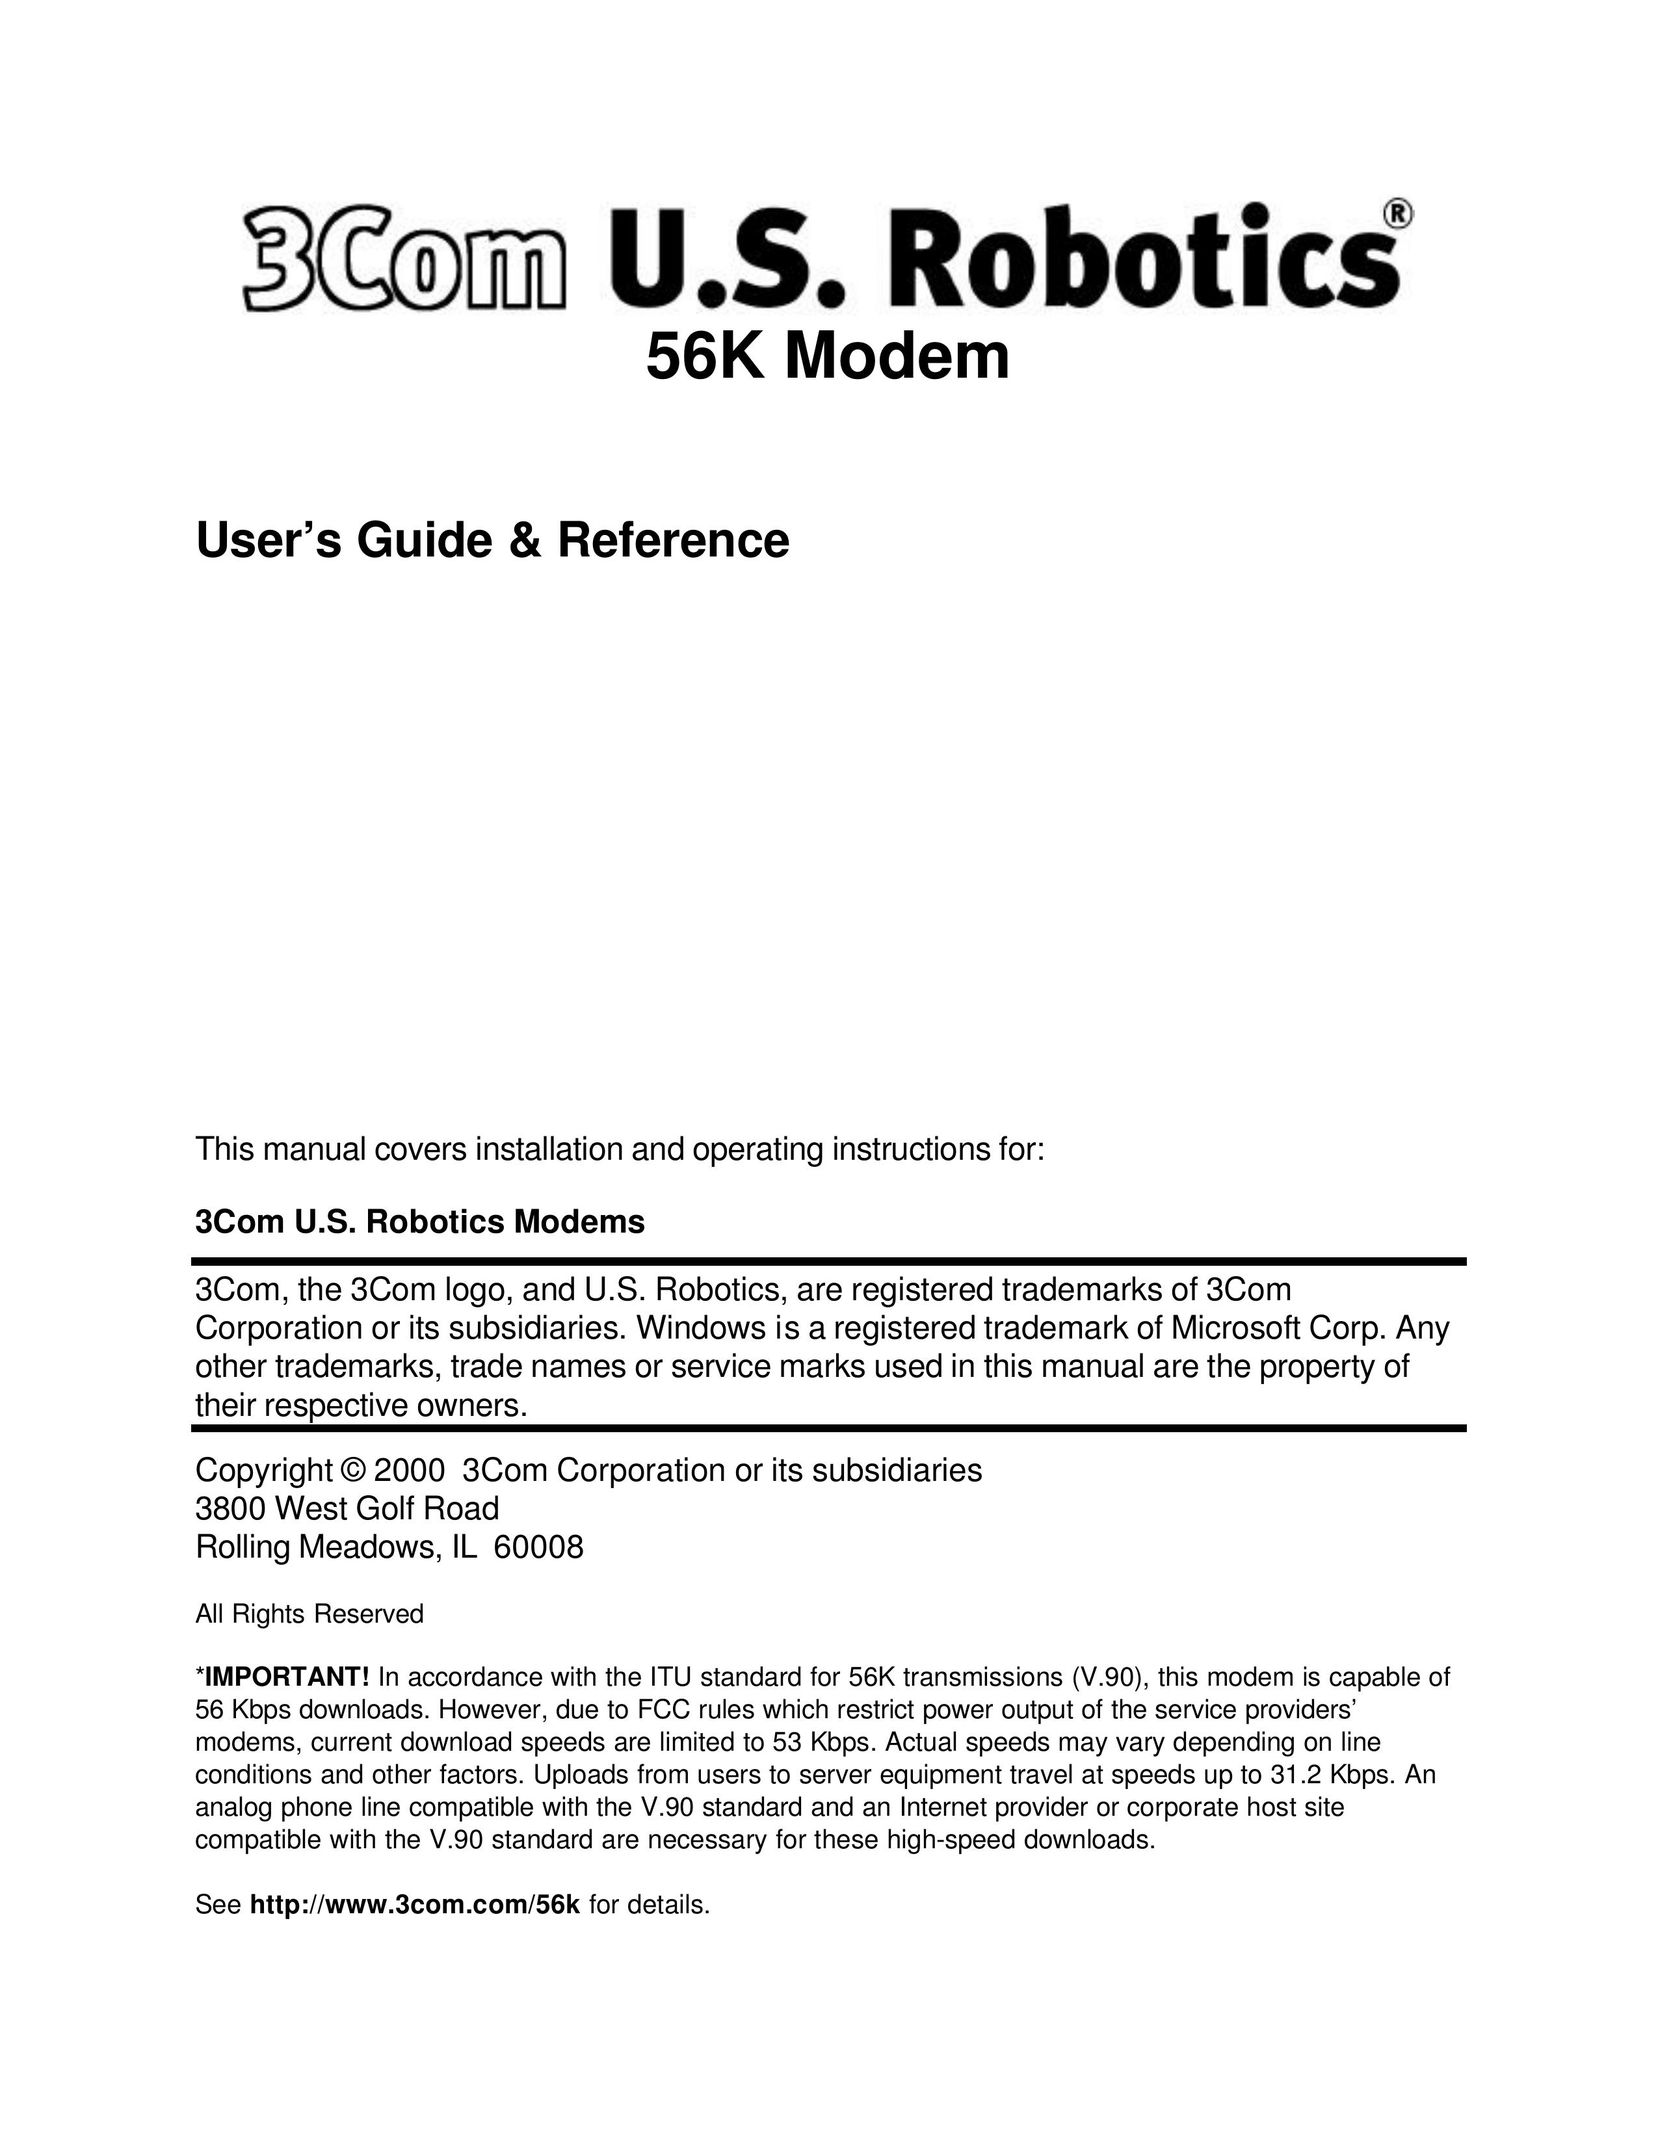 USRobotics 3Com Network Card User Manual